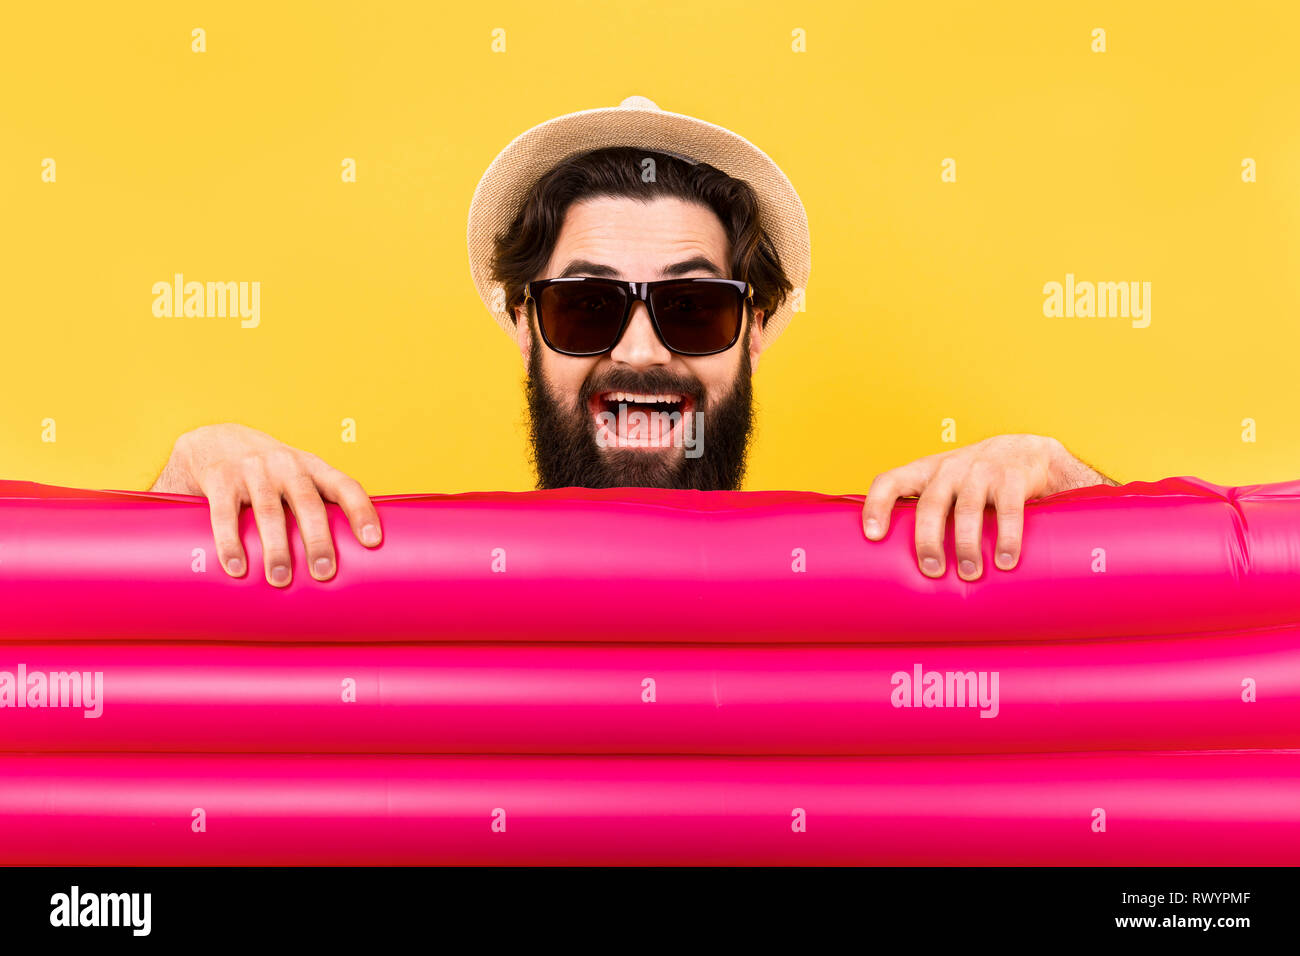 Studio portrait d'un barbu à lunettes de soleil et un chapeau de Panama, un homme tenant un matelas gonflable rose pour nager en face de lui, un concept summ Banque D'Images